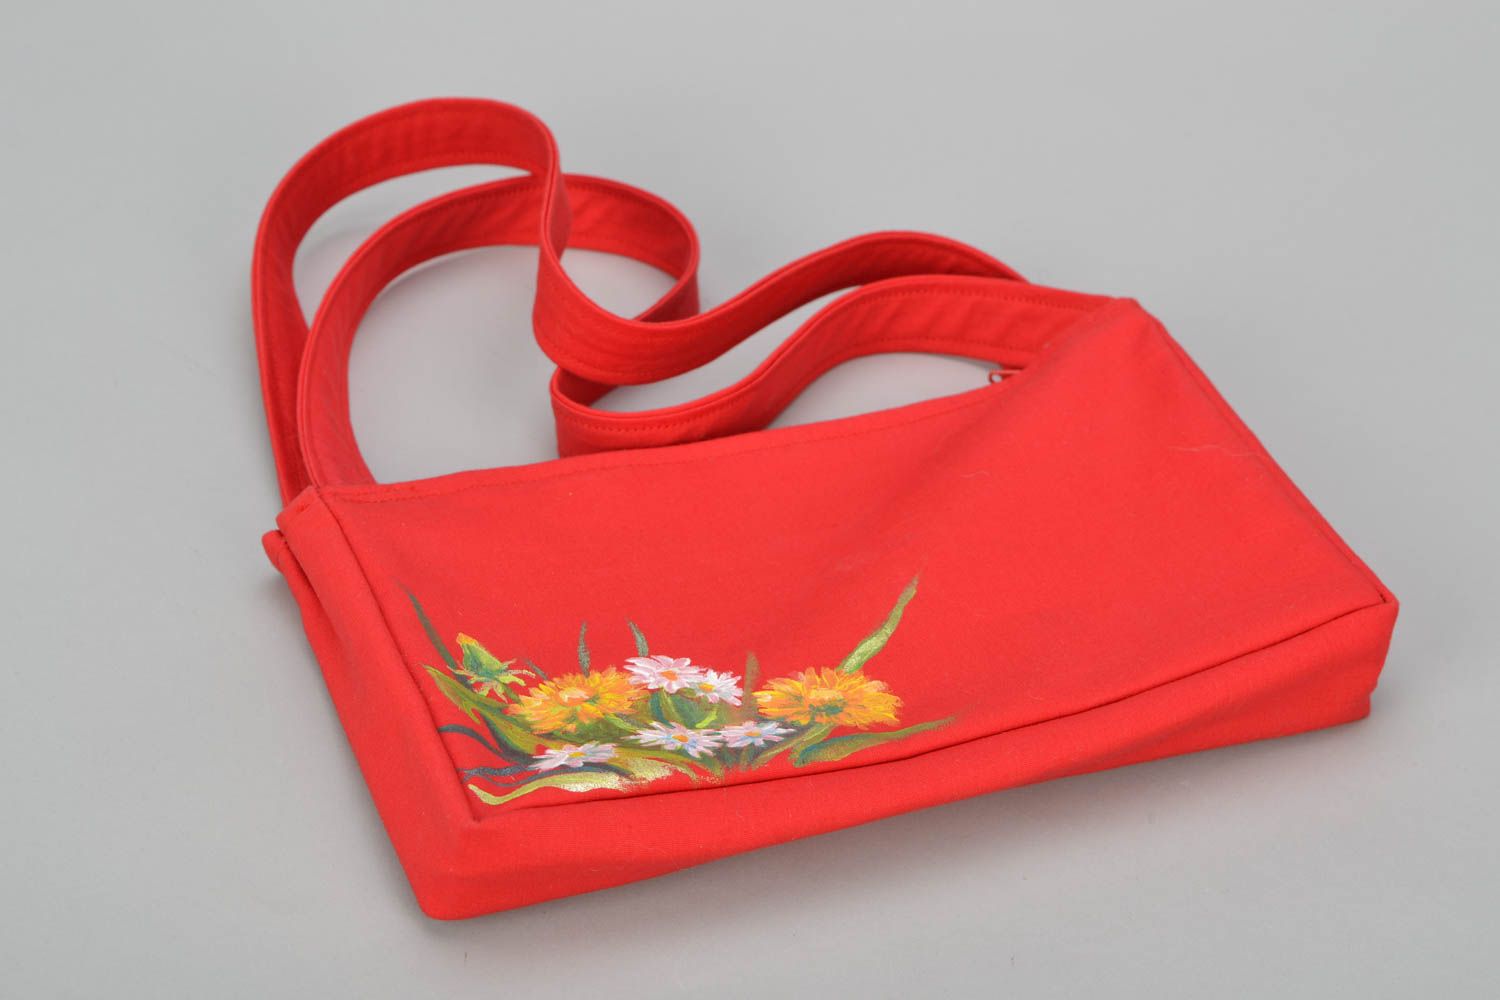 Textil Handtasche in Rot  foto 3